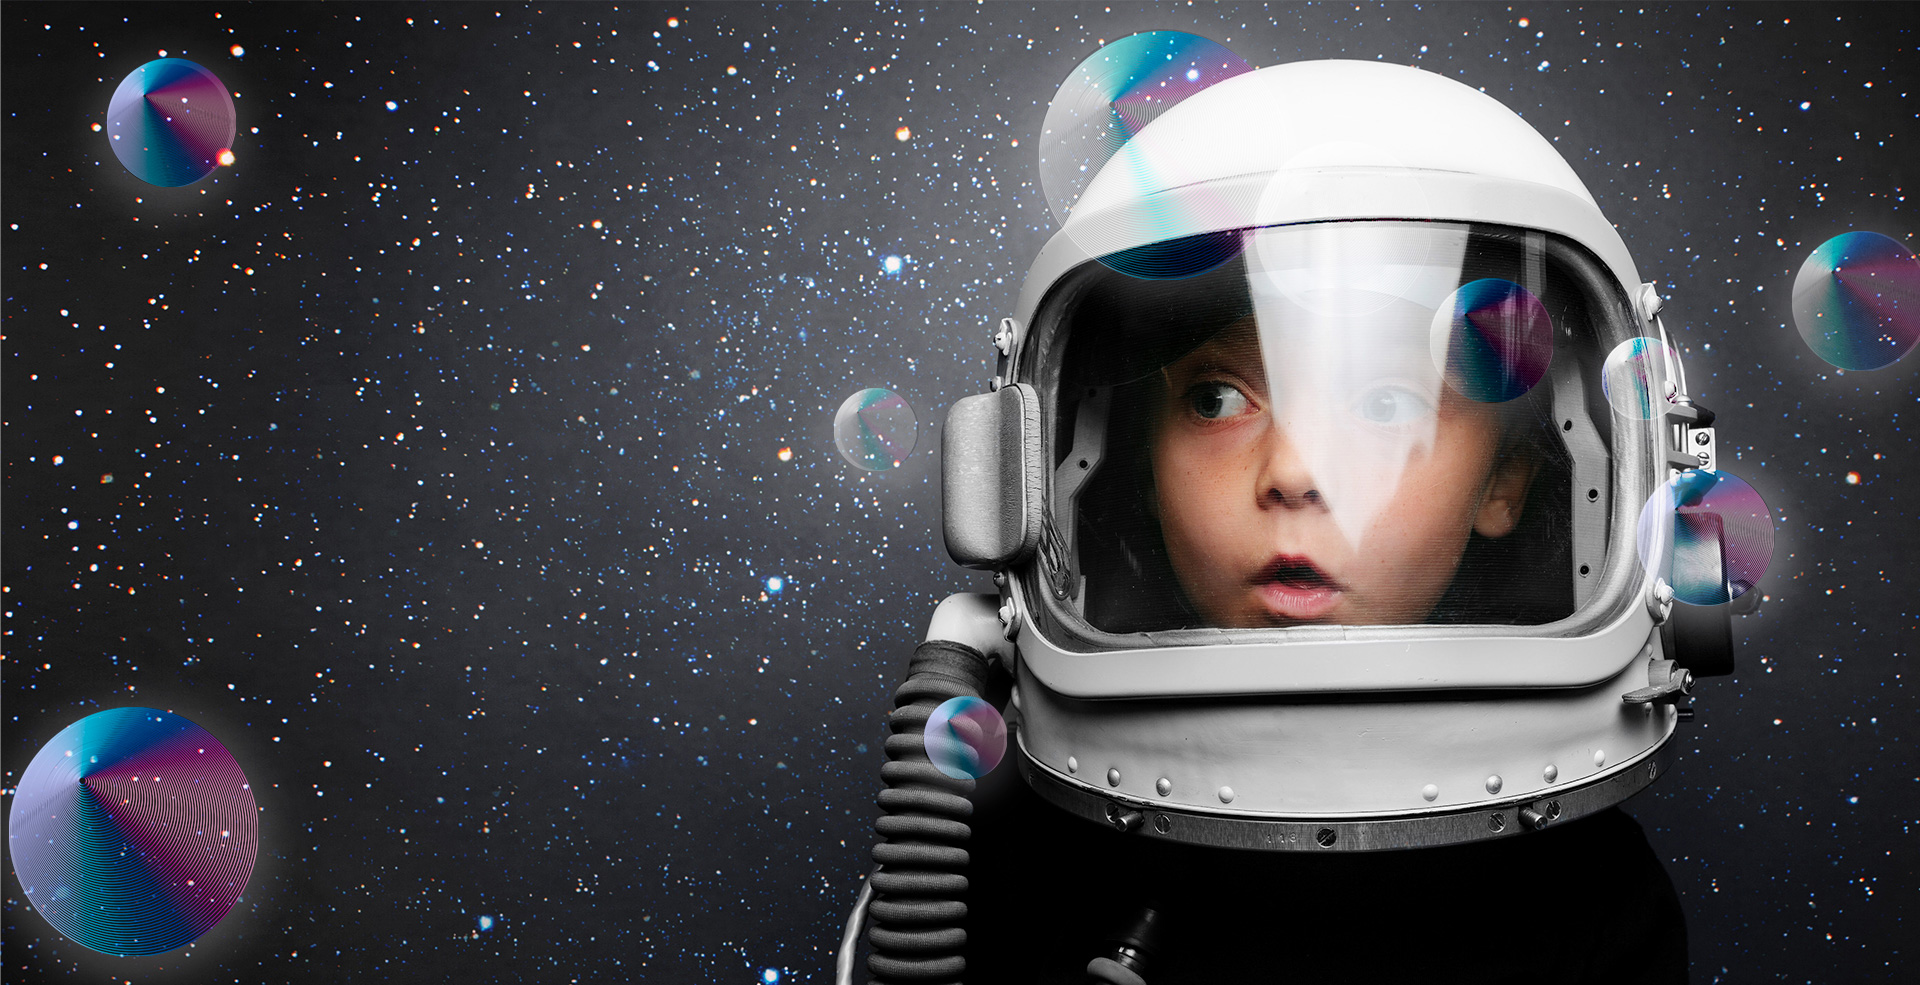 Young boy in space helmet